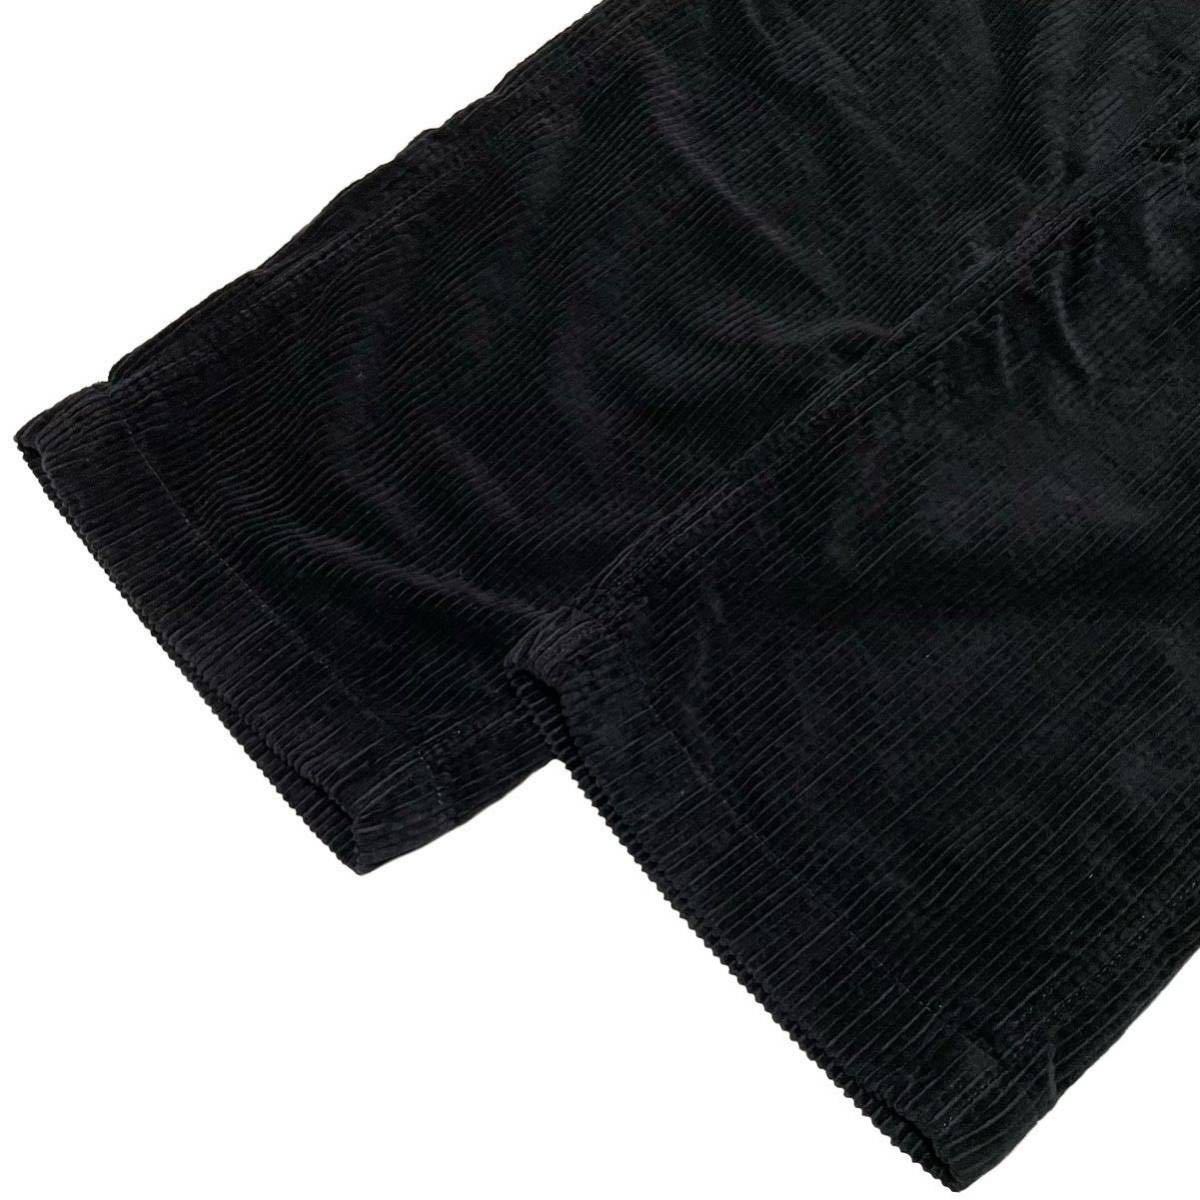  beautiful goods Schott Schott CORDUROY OVERALL PANTS Work corduroy overall all-in-one coveralls coverall overall pants black M